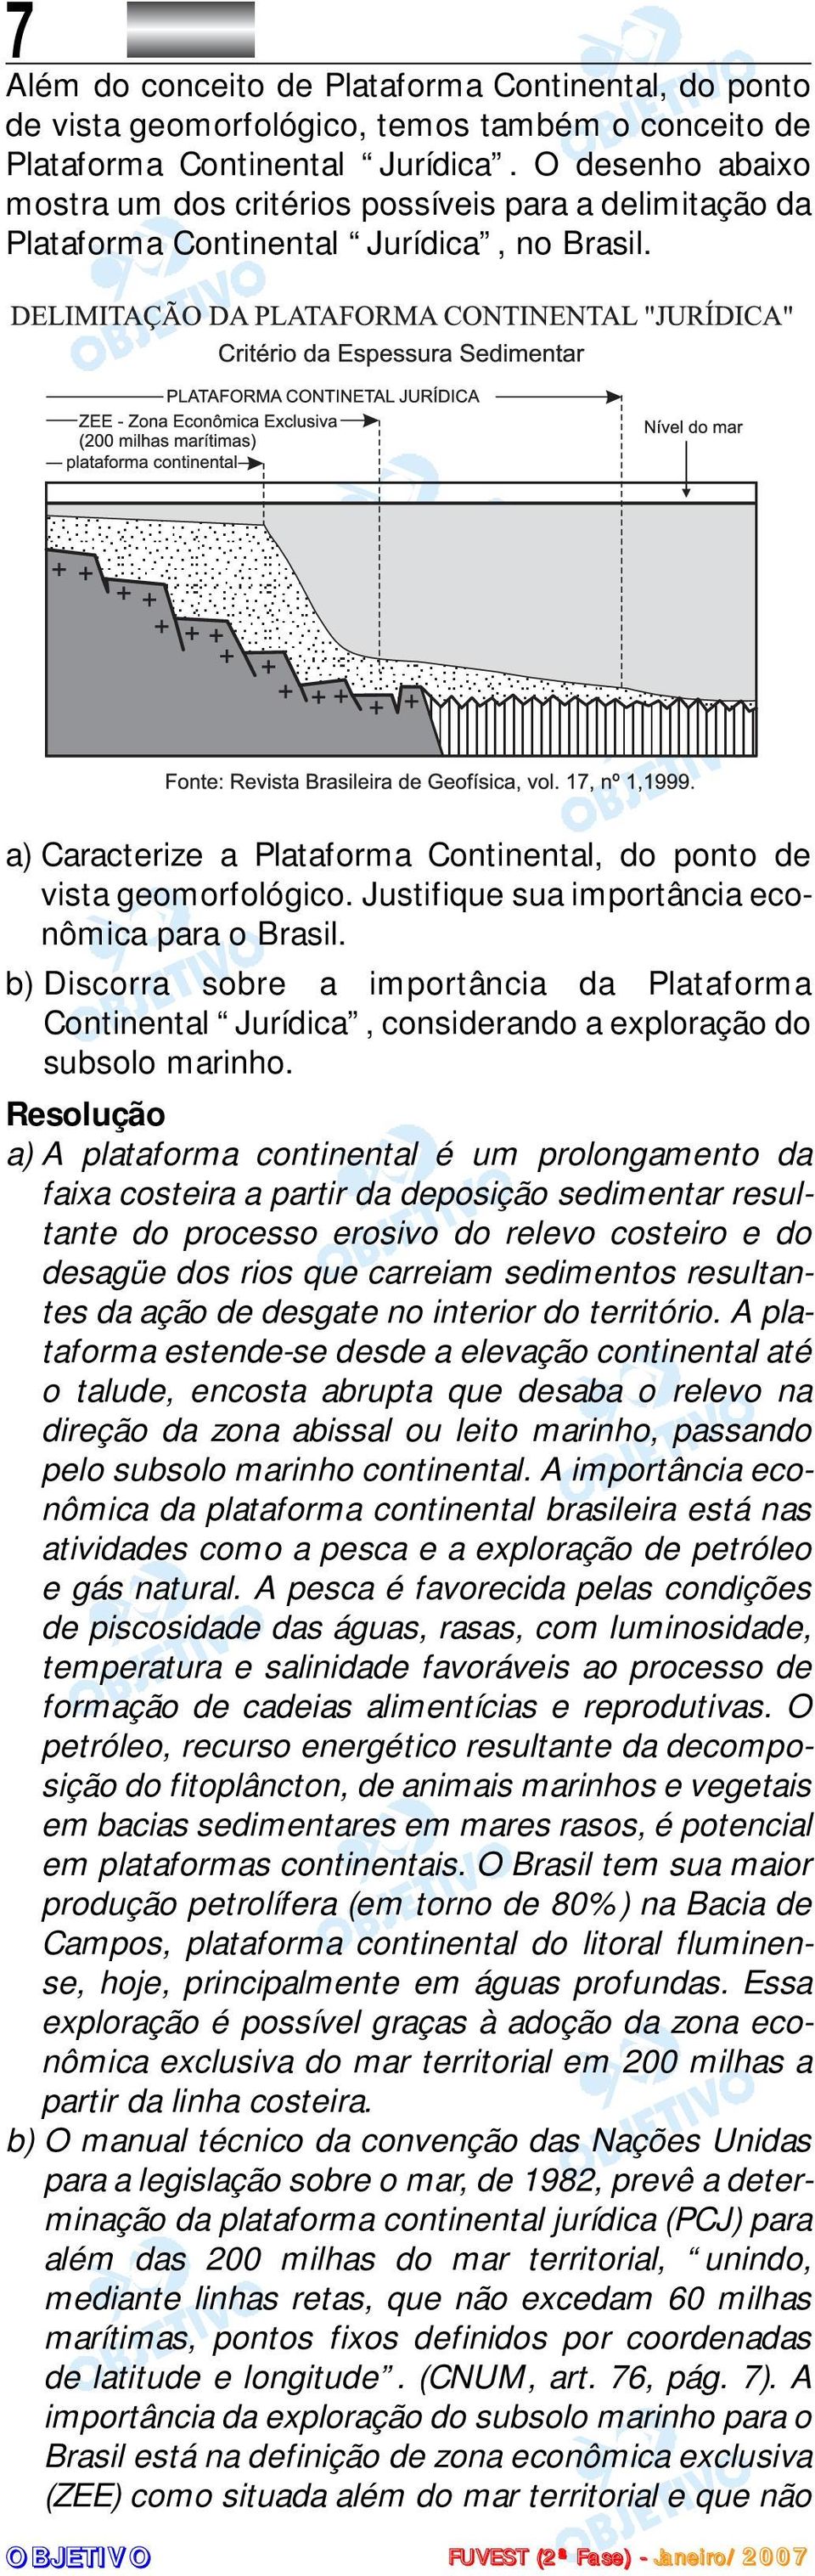 Justifique sua importância econômica para o Brasil. b) Discorra sobre a importância da Plataforma Continental Jurídica, considerando a exploração do subsolo marinho.